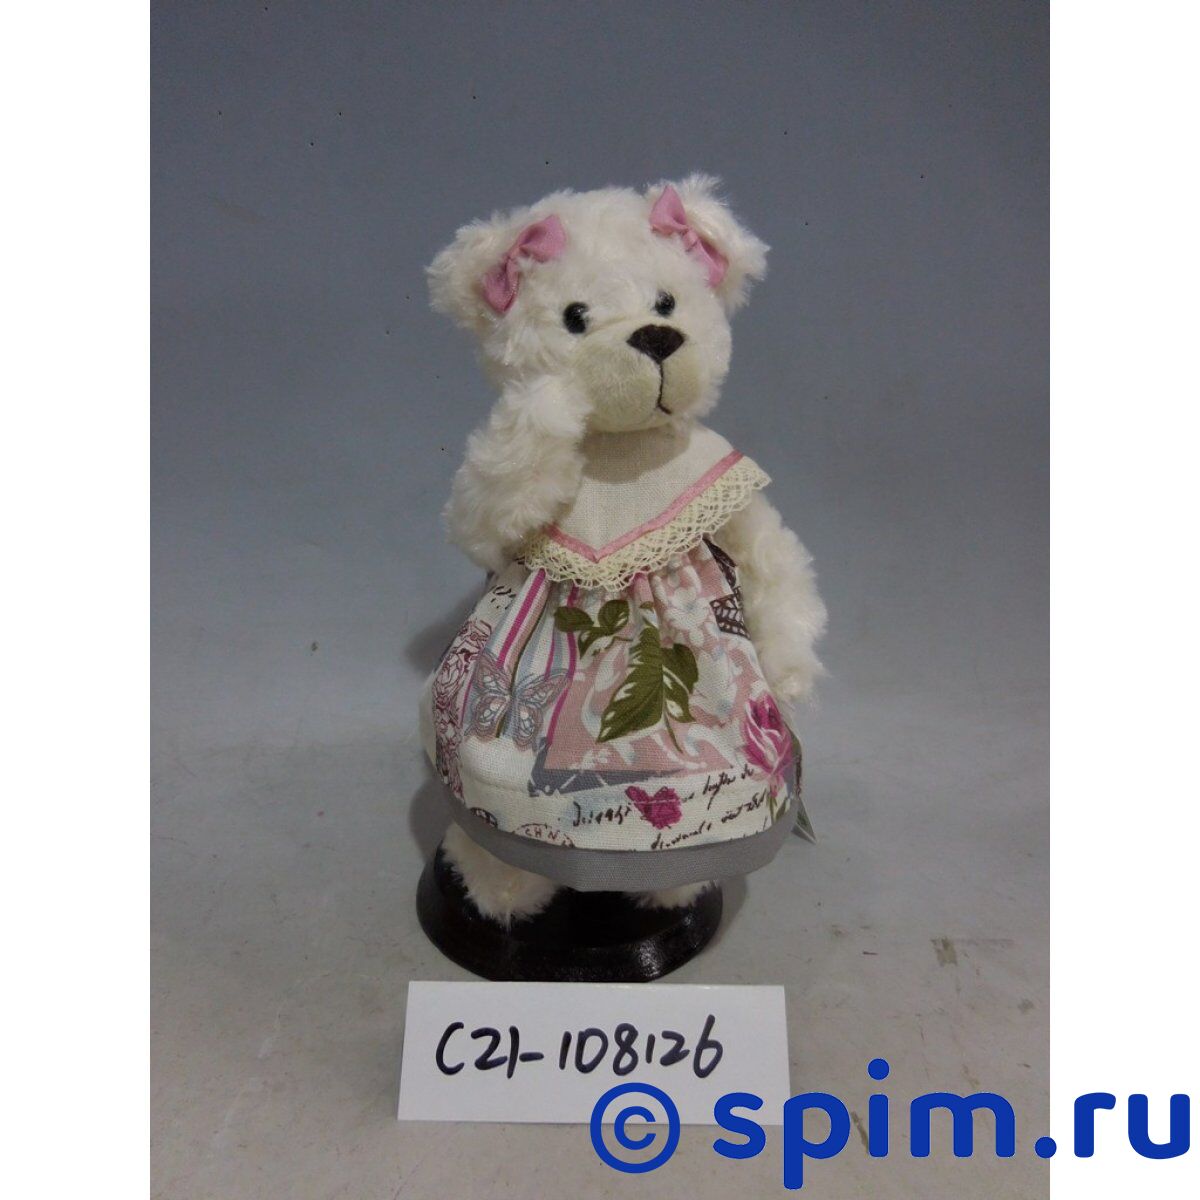 Интерьерная кукла Медведица C21-108126